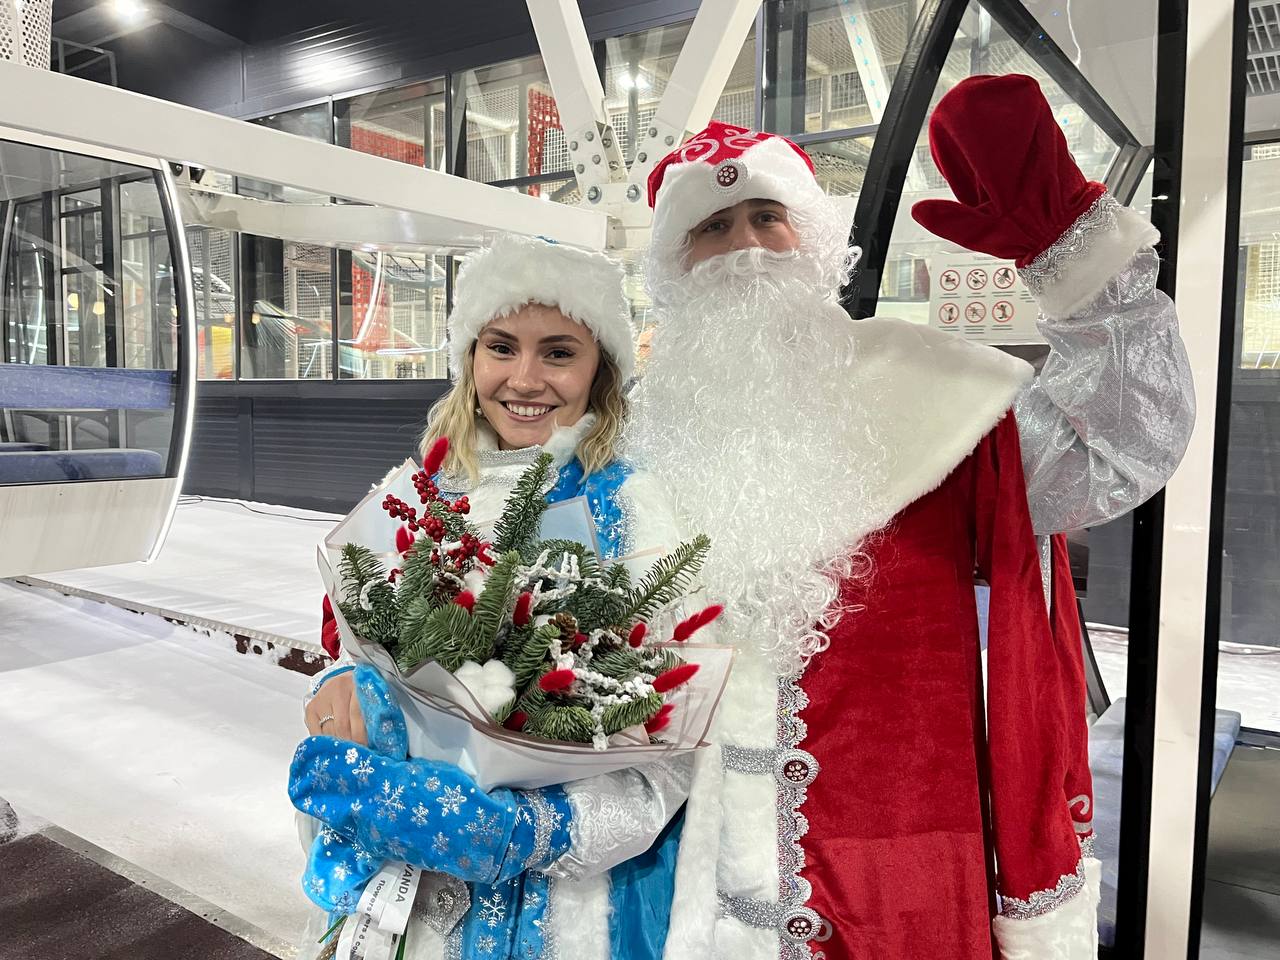 Омичи поженились в костюмах Деда Мороза и Снегурочки на колесе обозрения #Новости #Общество #Омск